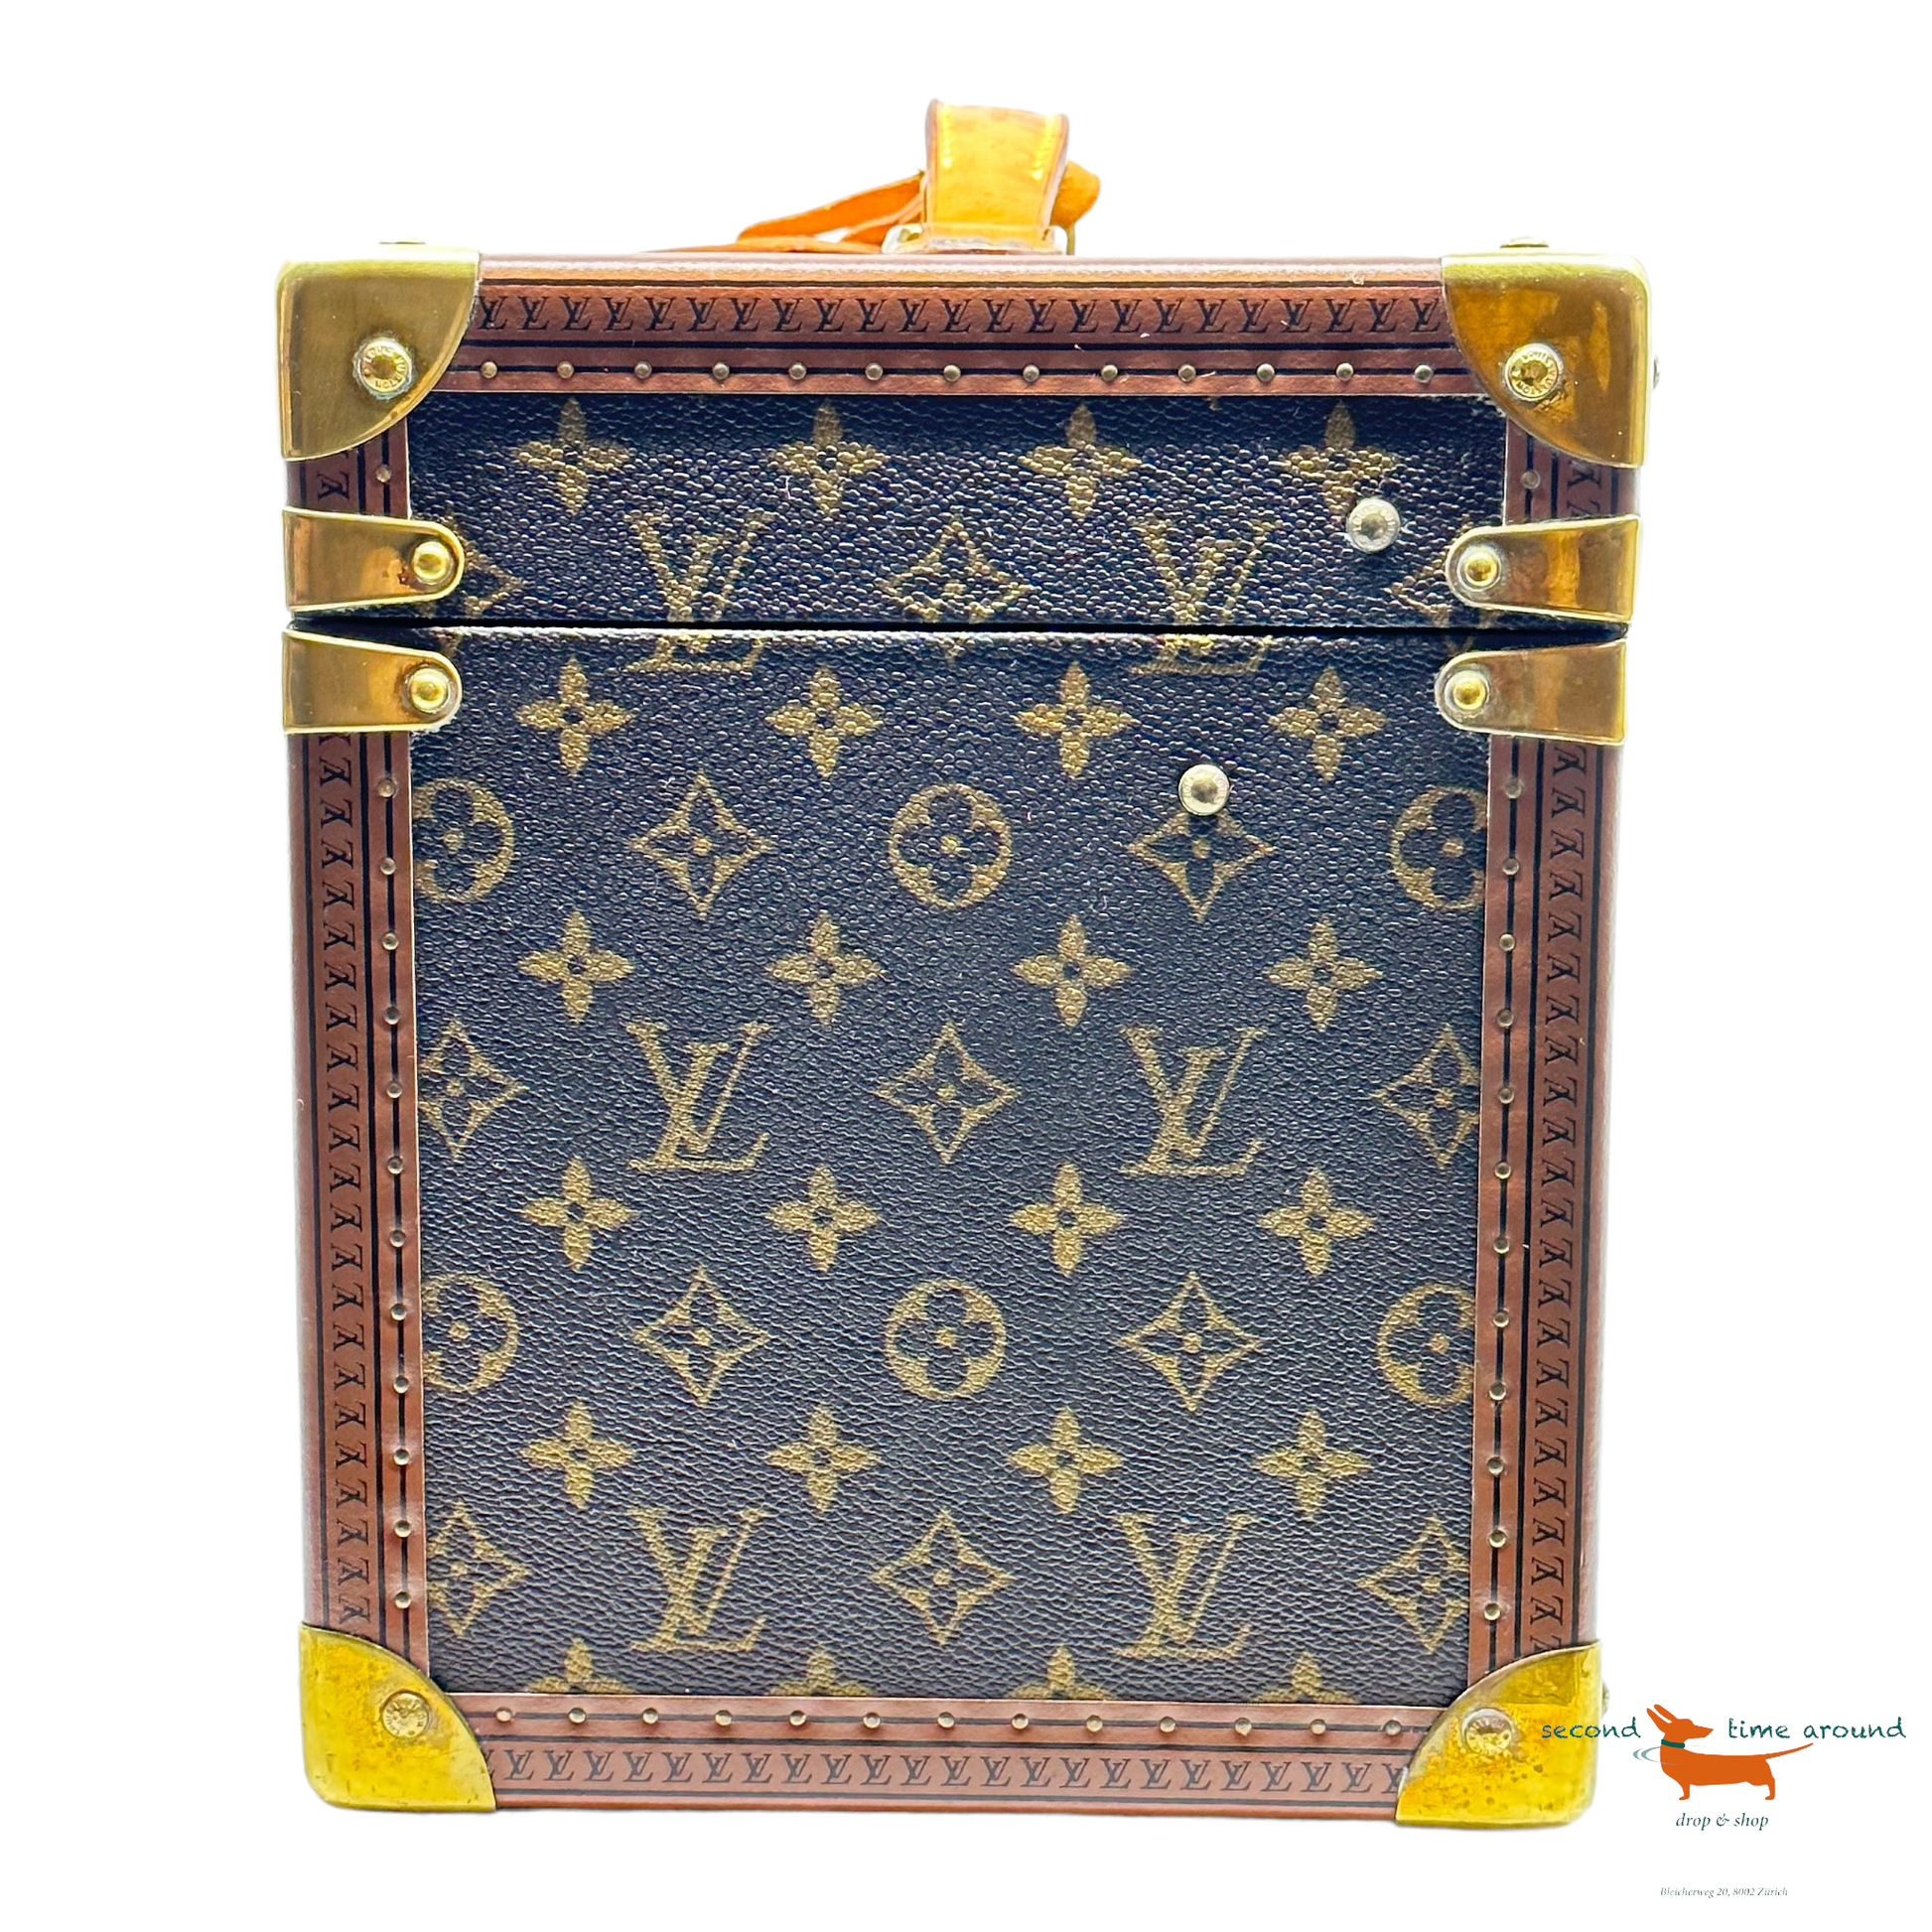 Louis Vuitton Monogram Canvas Mabillon - Ankauf & Verkauf Second